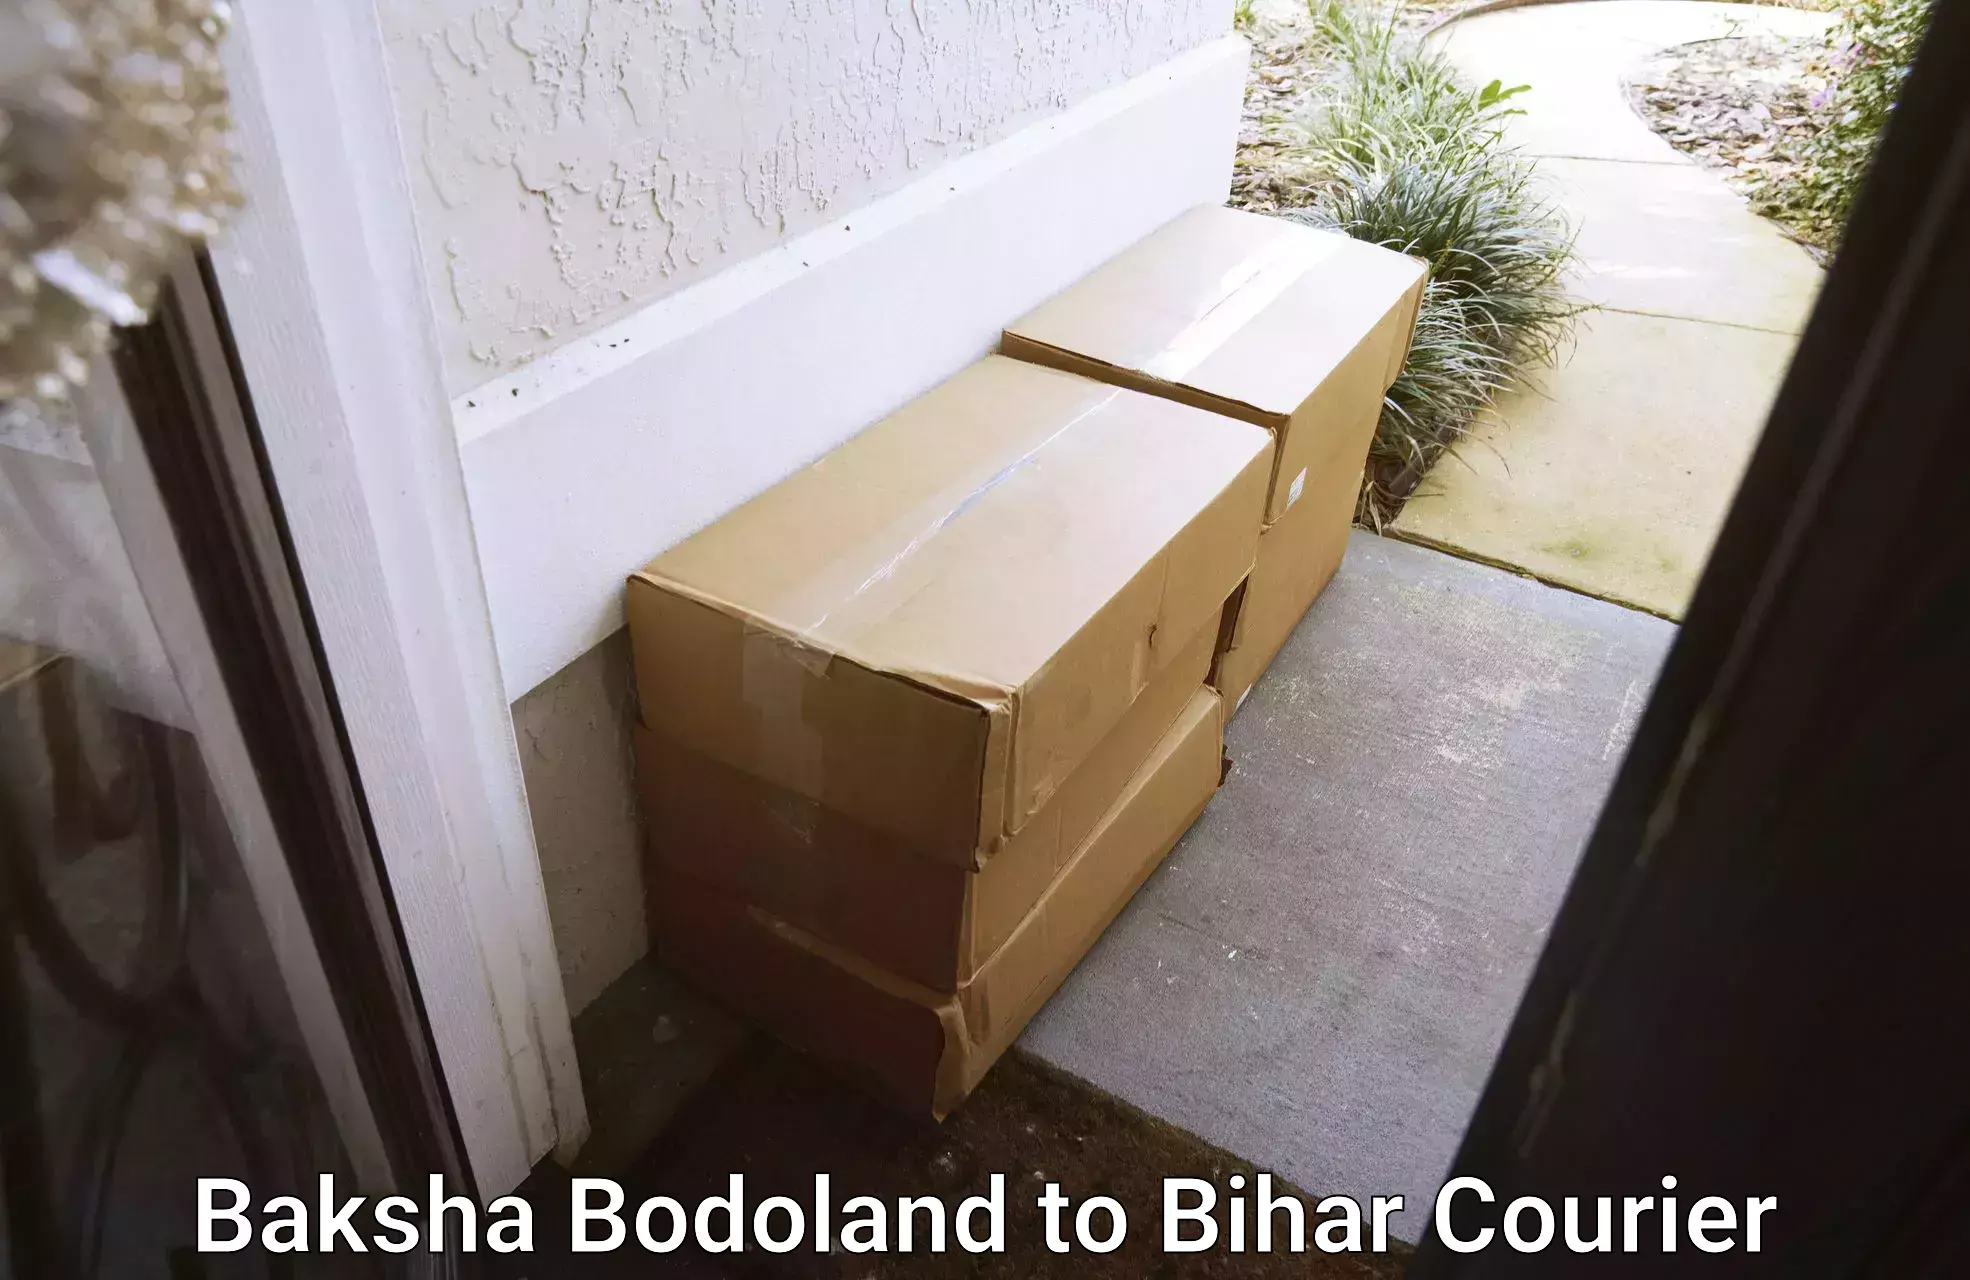 Parcel handling and care Baksha Bodoland to Bihar